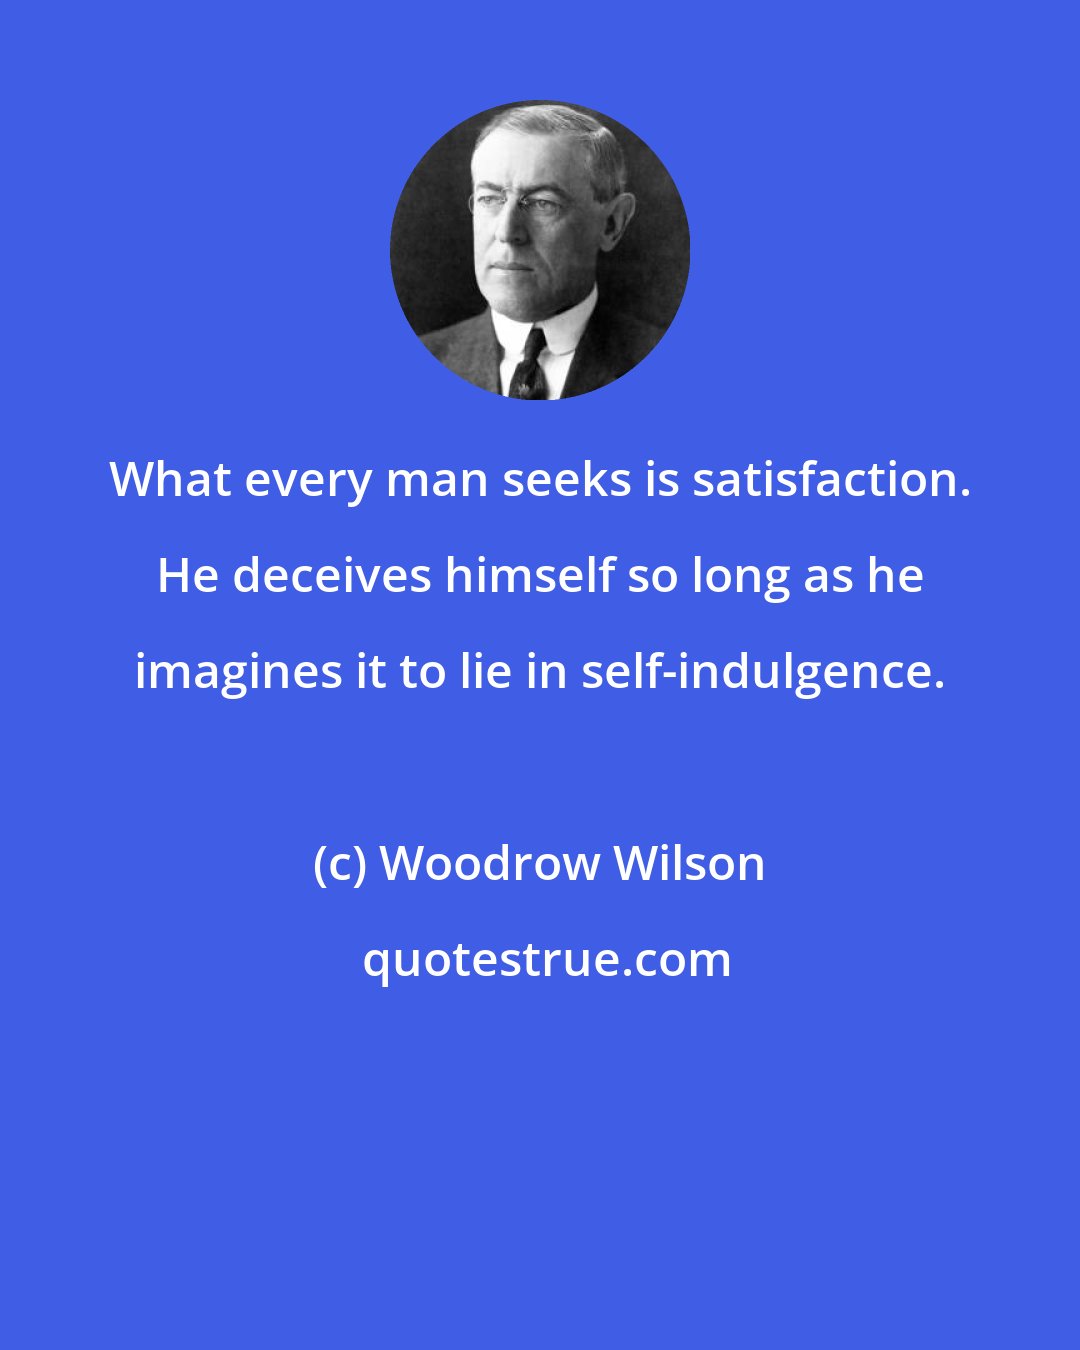 Woodrow Wilson: What every man seeks is satisfaction. He deceives himself so long as he imagines it to lie in self-indulgence.